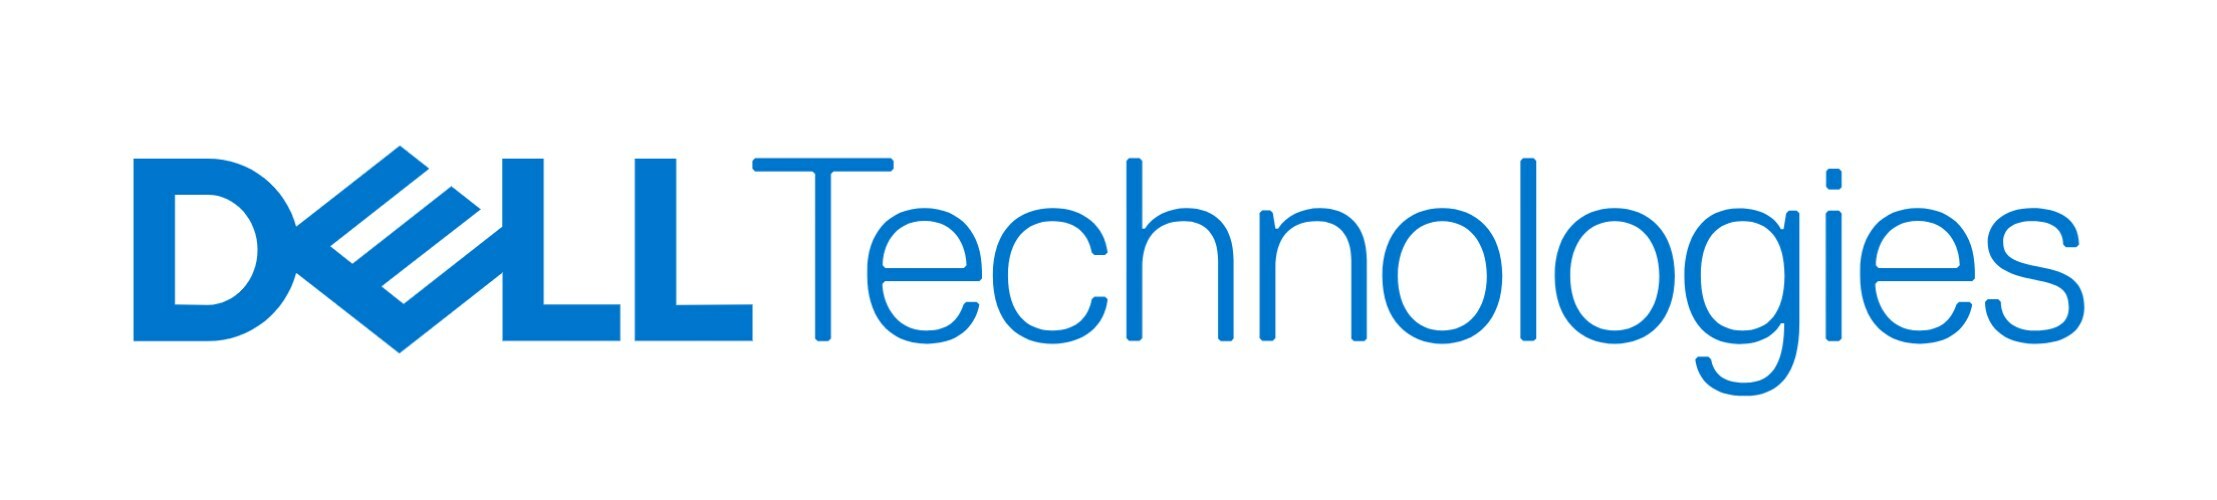 Dell Technologies logo (PRNewsfoto/Dell Technologies)